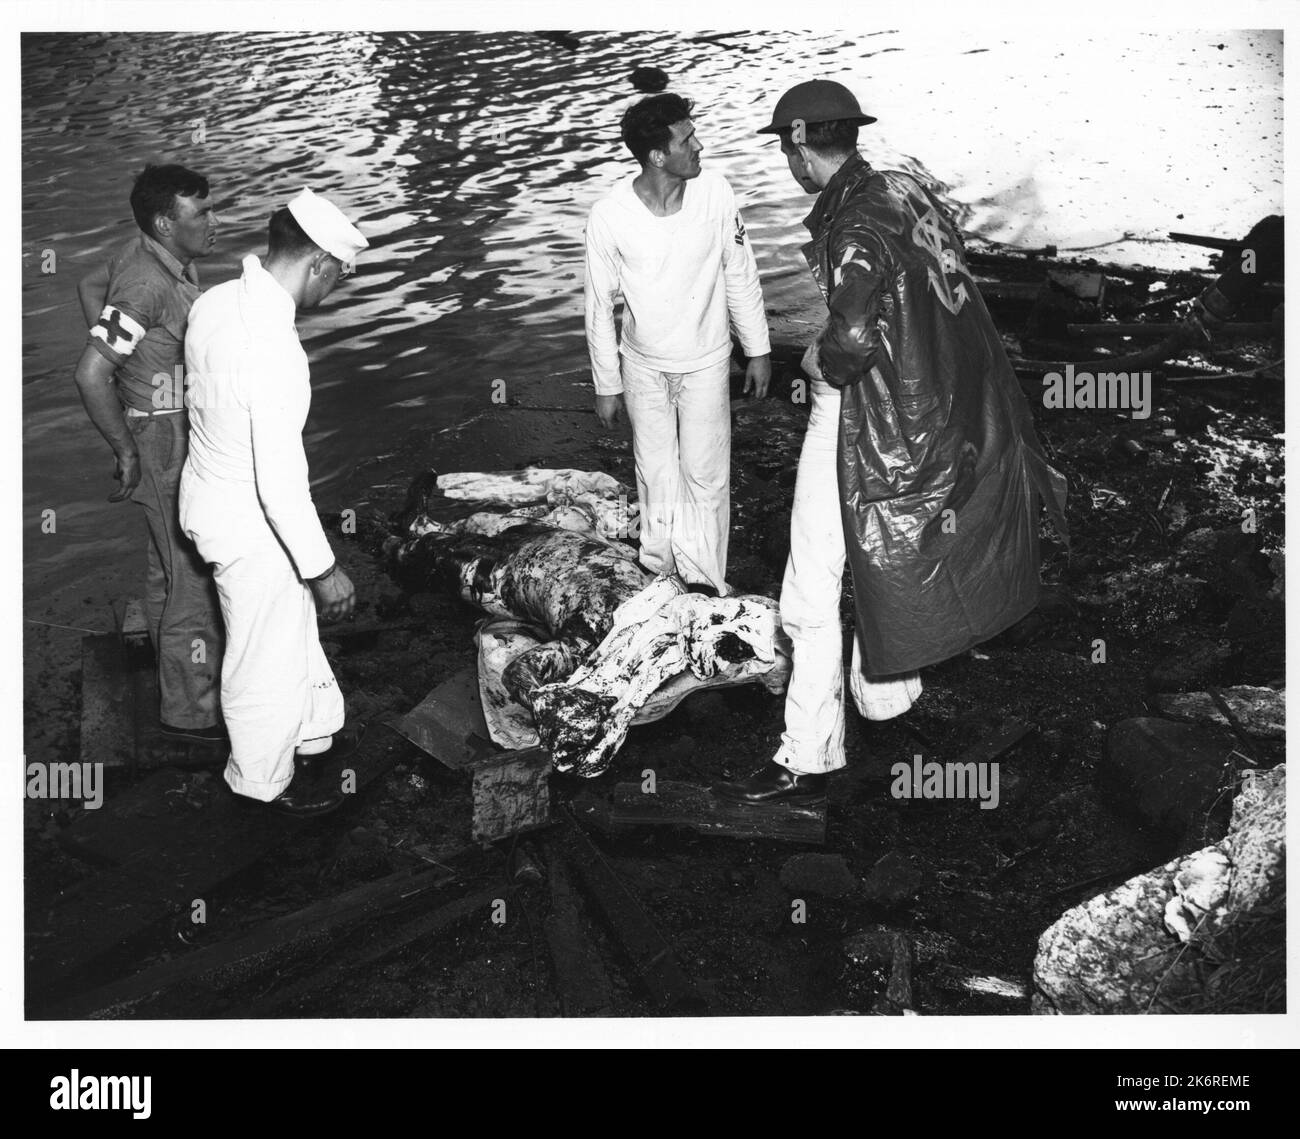 Fotografia dei resti frantumati di un pilota giapponese il cui aereo è stato abbattuto durante l'attacco di Pearl Harbor USS Arizona (BB39) che bruciò dopo l'attacco giapponese a Pearl Harbor, dicembre 7 1941. Foto Stock